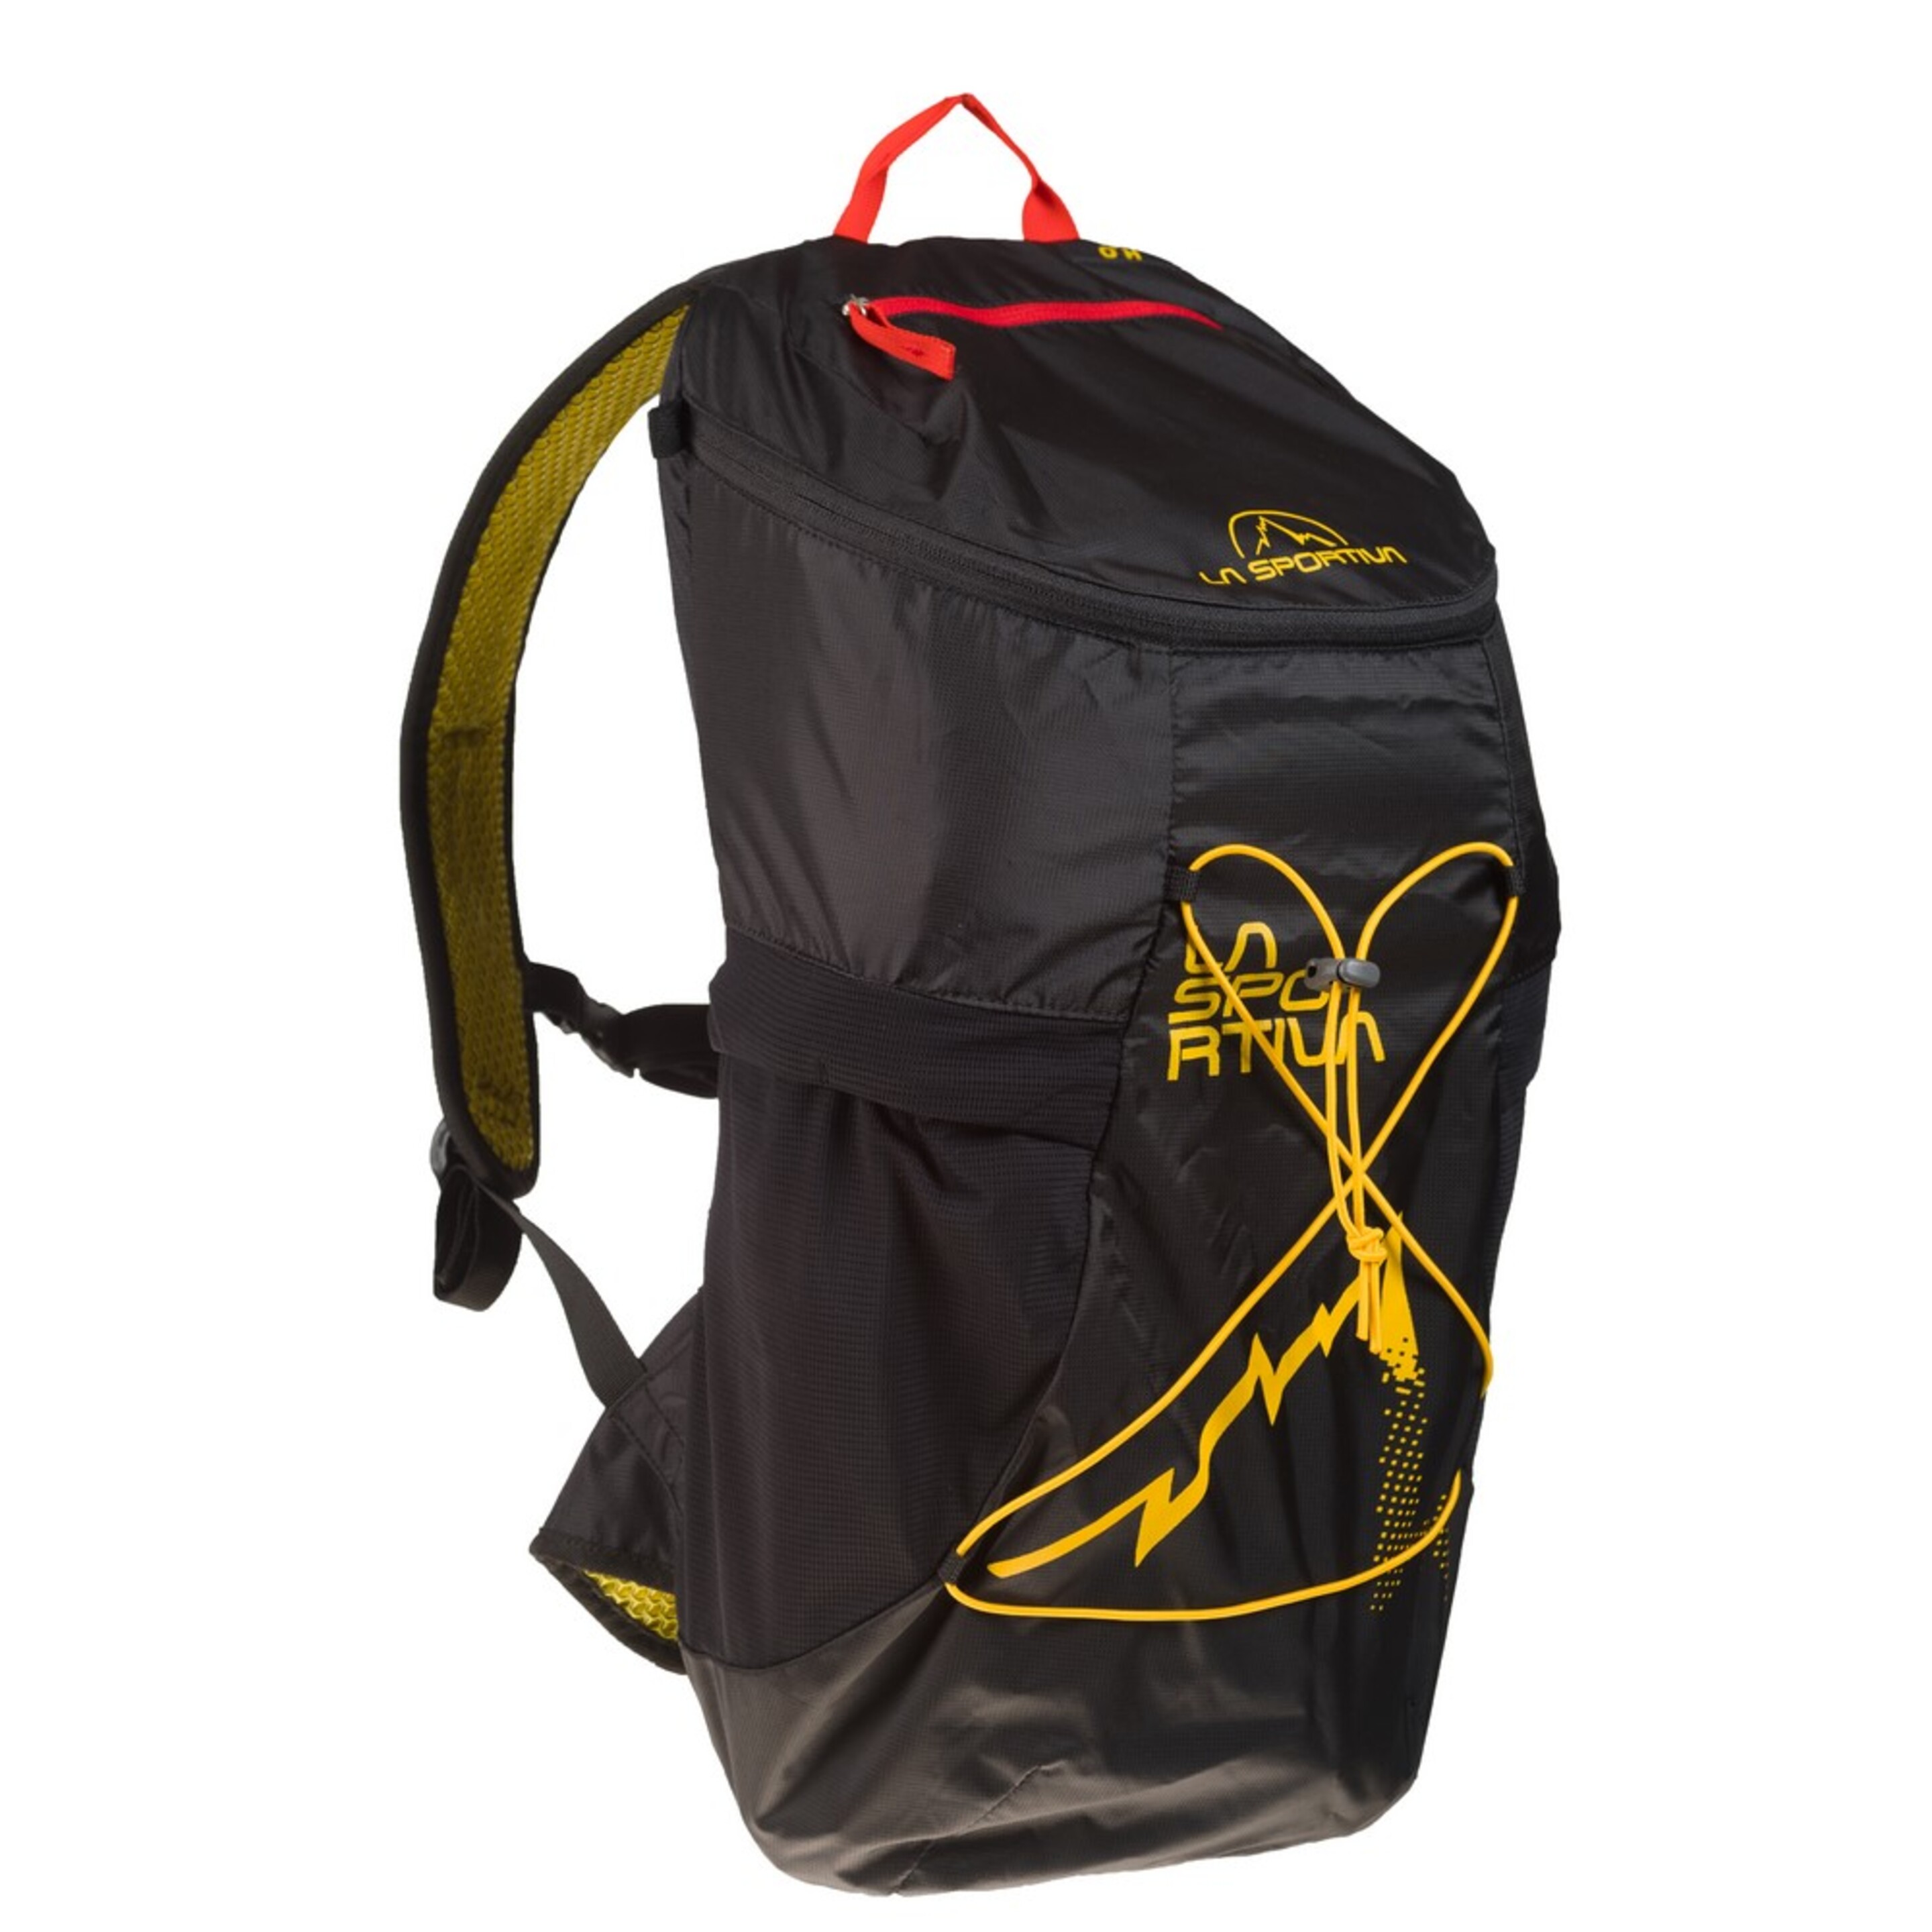 Mochila De Senderismo X-cursion Backpack La Sportiva